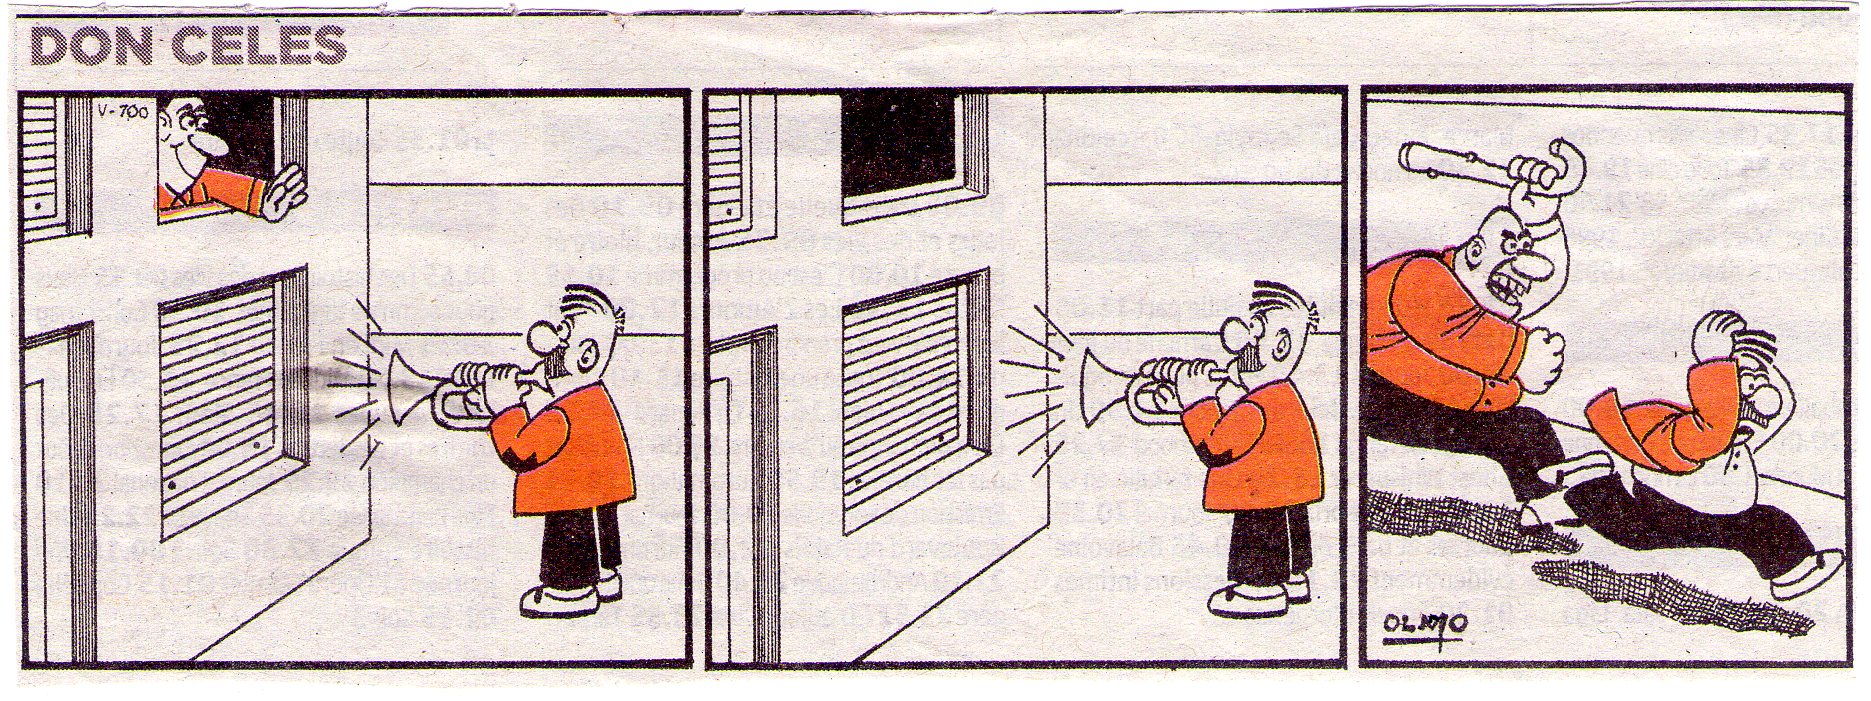 Don Celes toca la trompeta frente a la casa del vecino